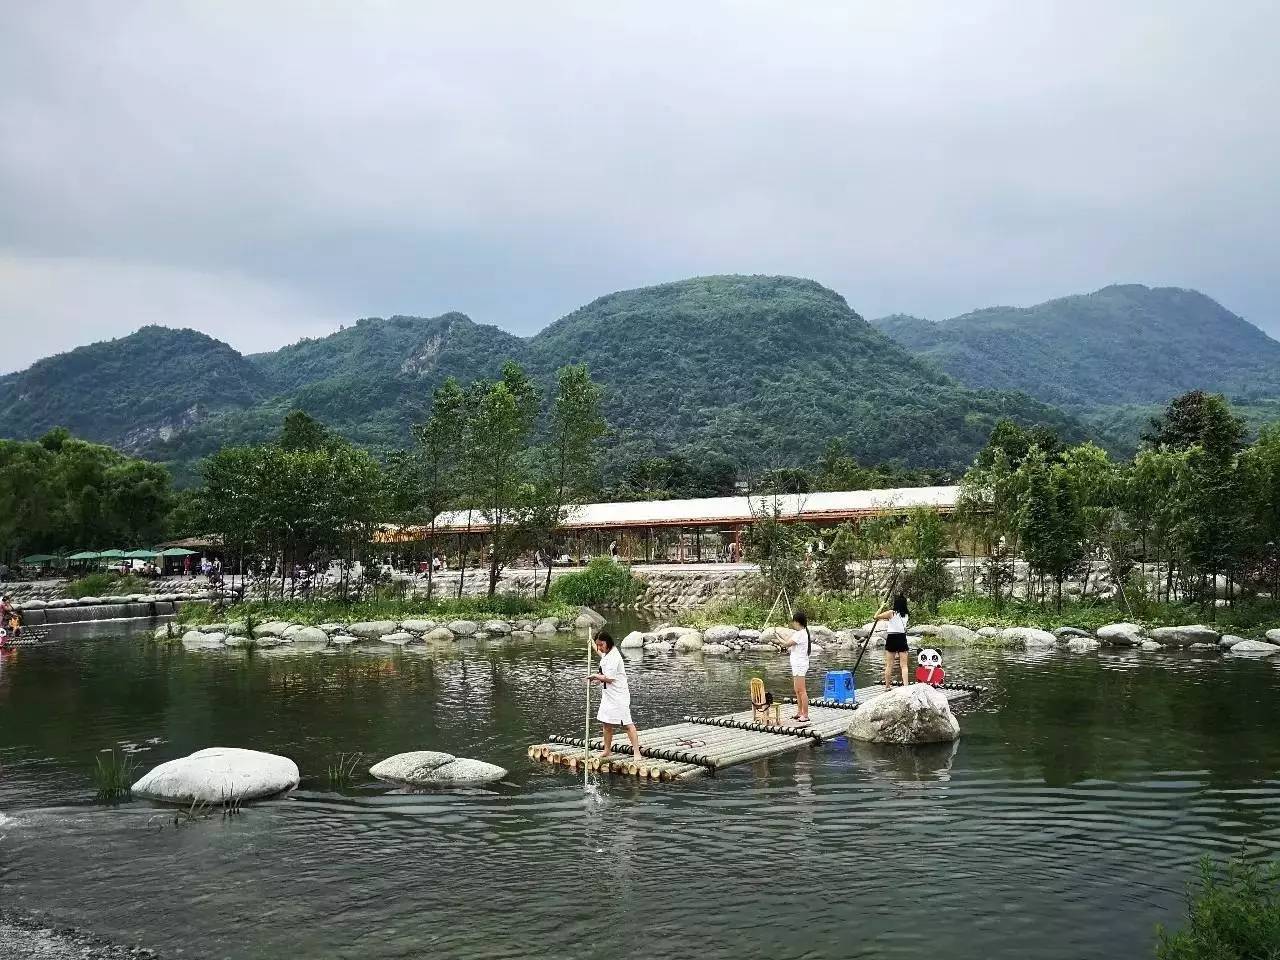 图 品鉴彭州 鱼凫乐园在彭州小鱼洞镇,是今年新打造的一个湿地乐园